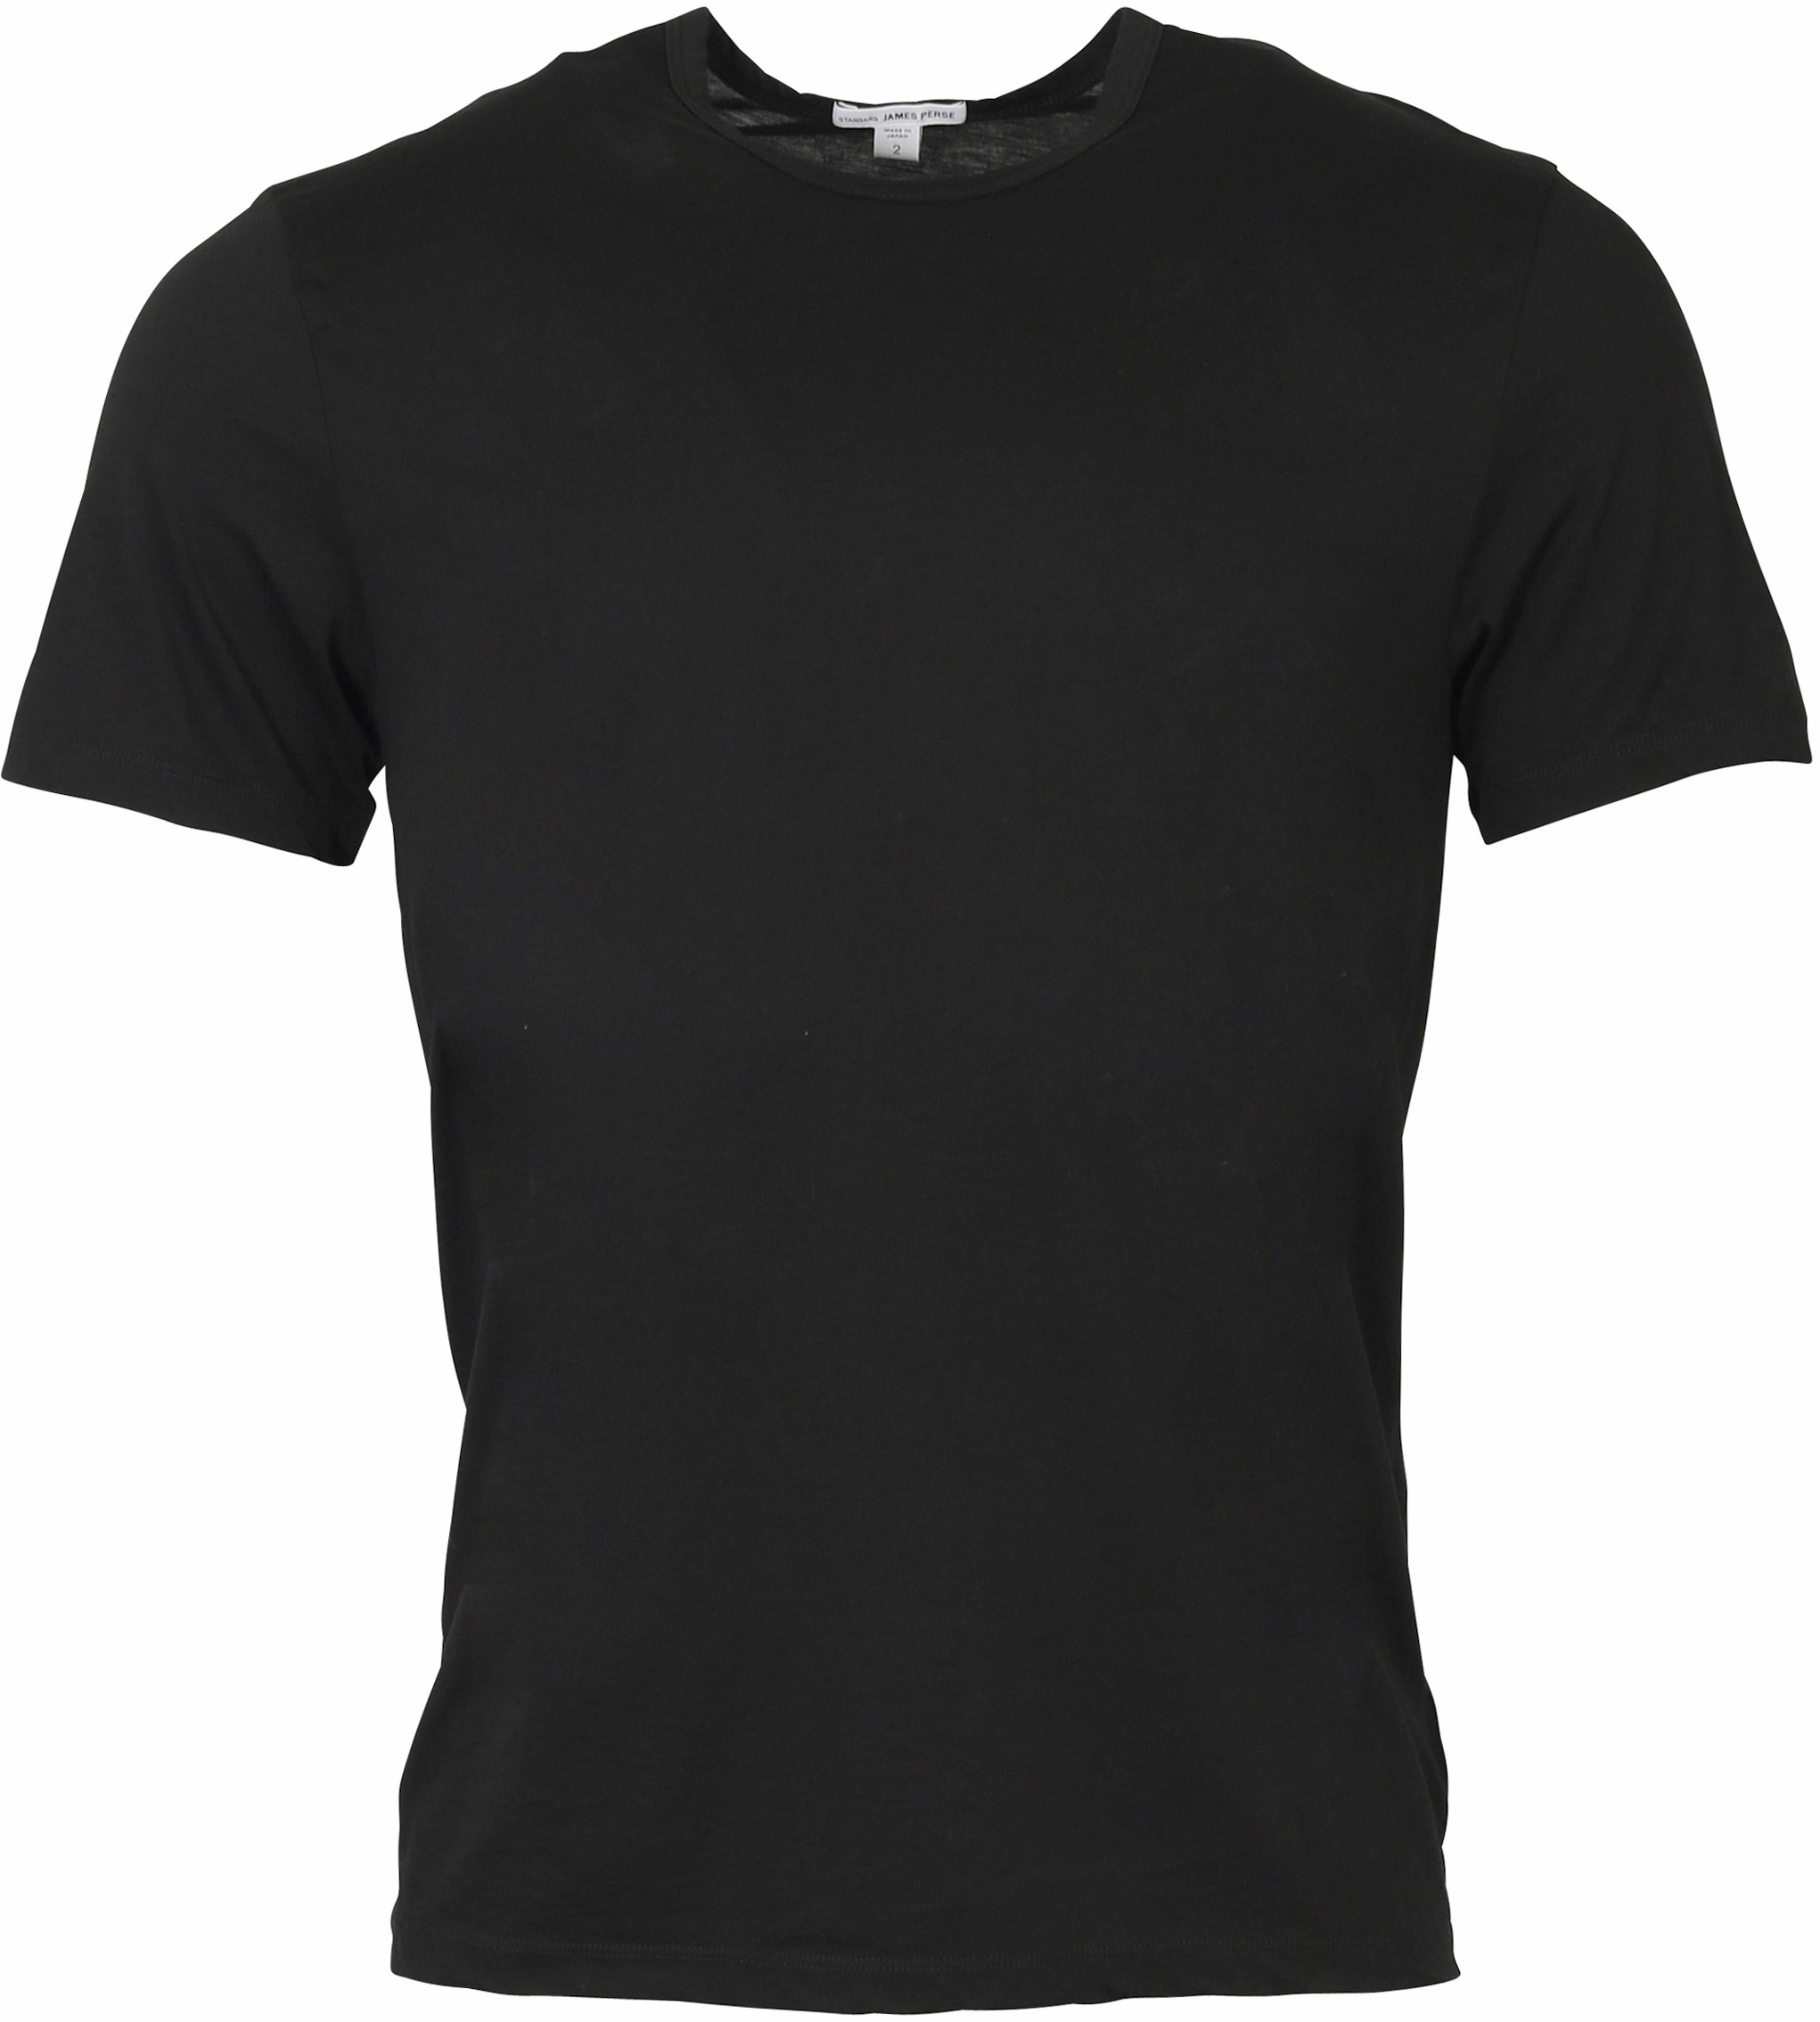 James Perse Cotton Cashmere T-Shirt Black M